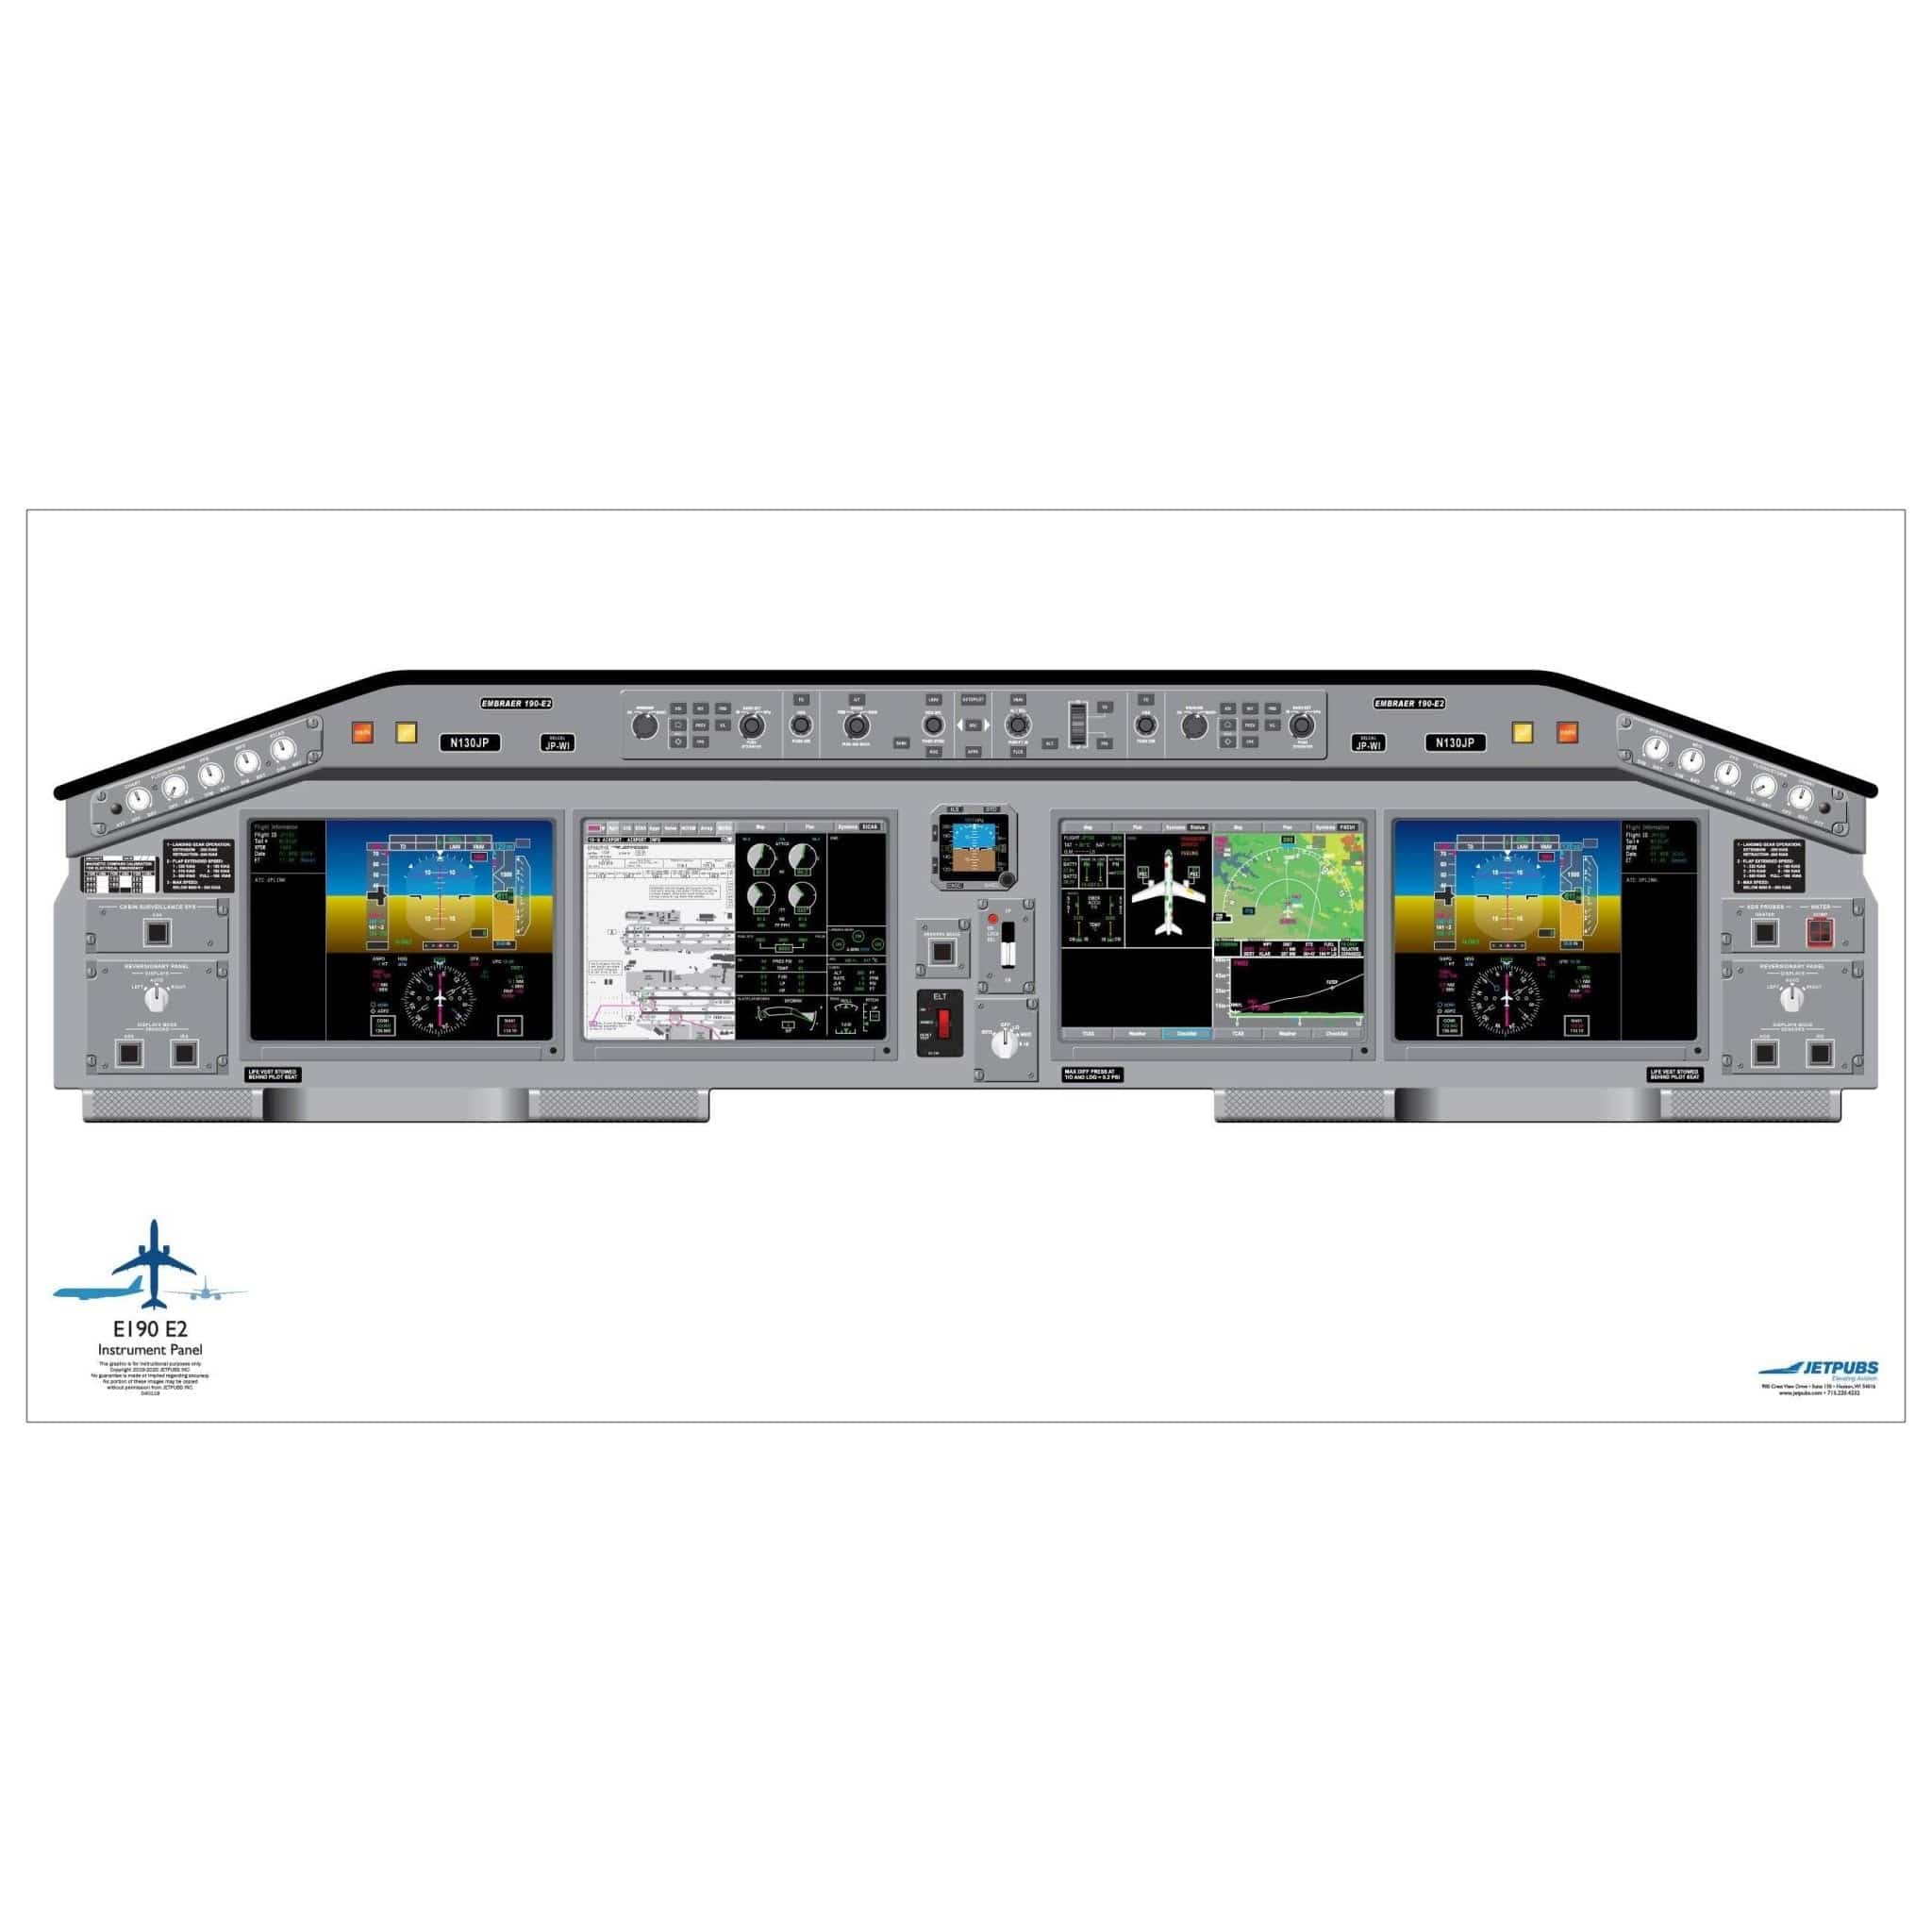 Embraer 18" x 36" Cockpit Posters - PilotMall.com